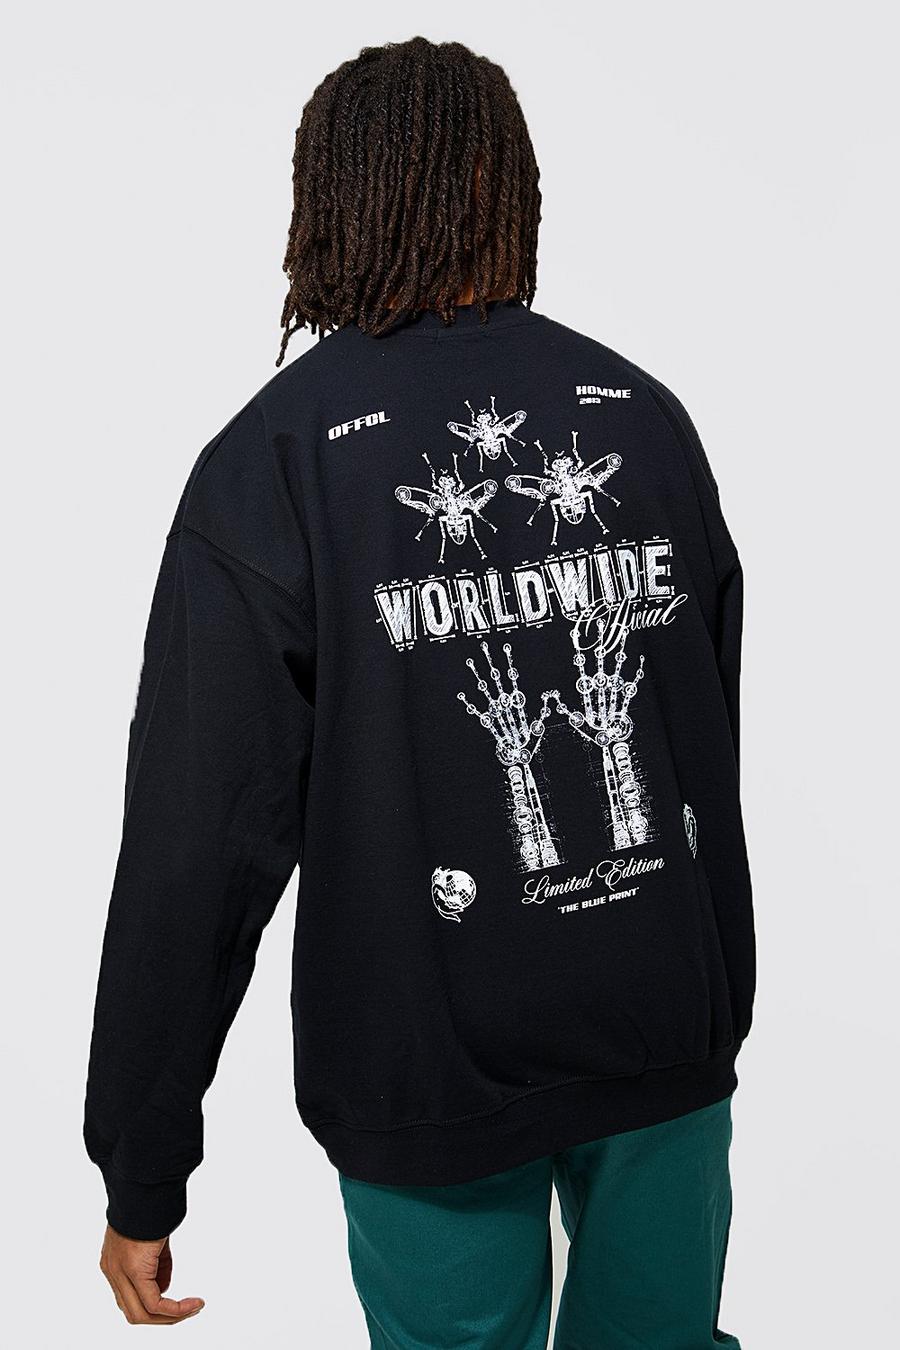 Black Oversized Worldwide Back Print Sweatshirt